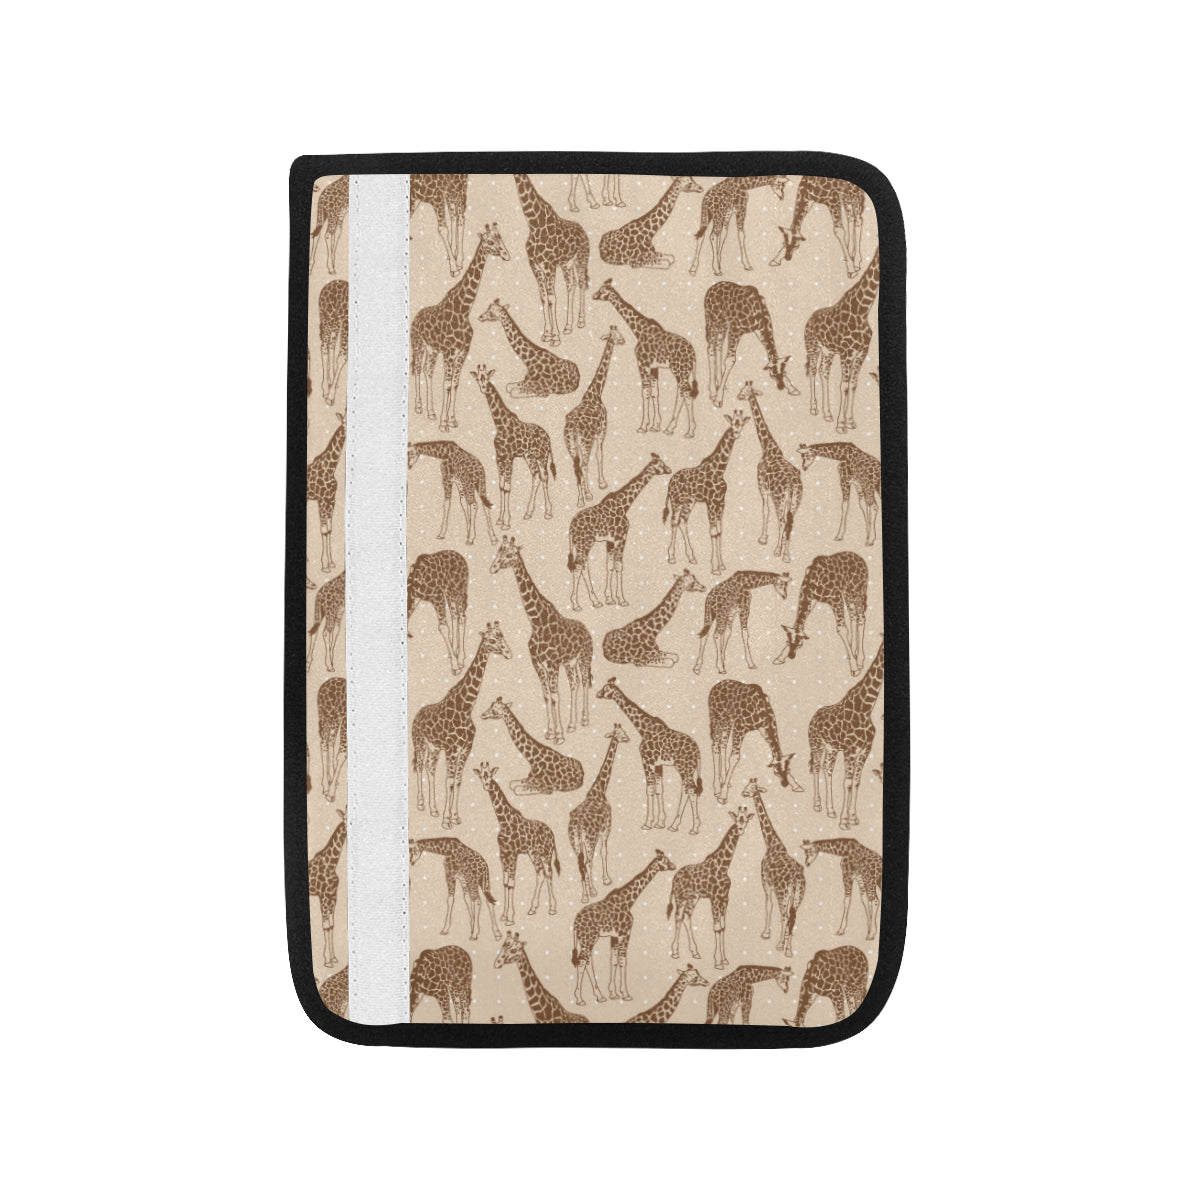 Giraffe Pattern Design Print Car Seat Belt Cover